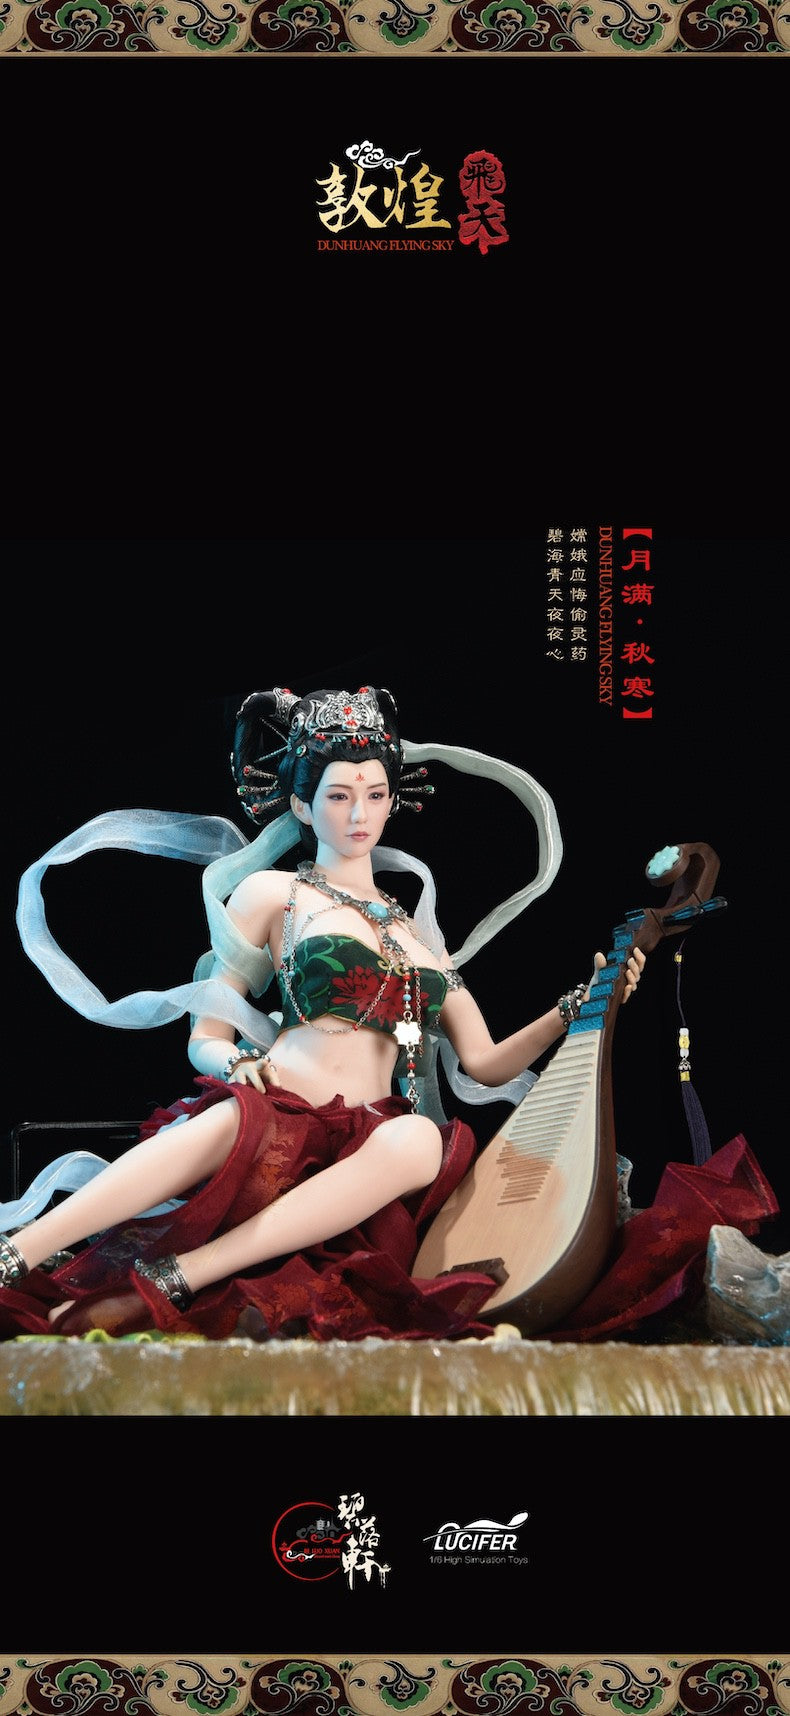 LUCIFER Chang'e / Moon Goddess action figure 1/6 blx201b